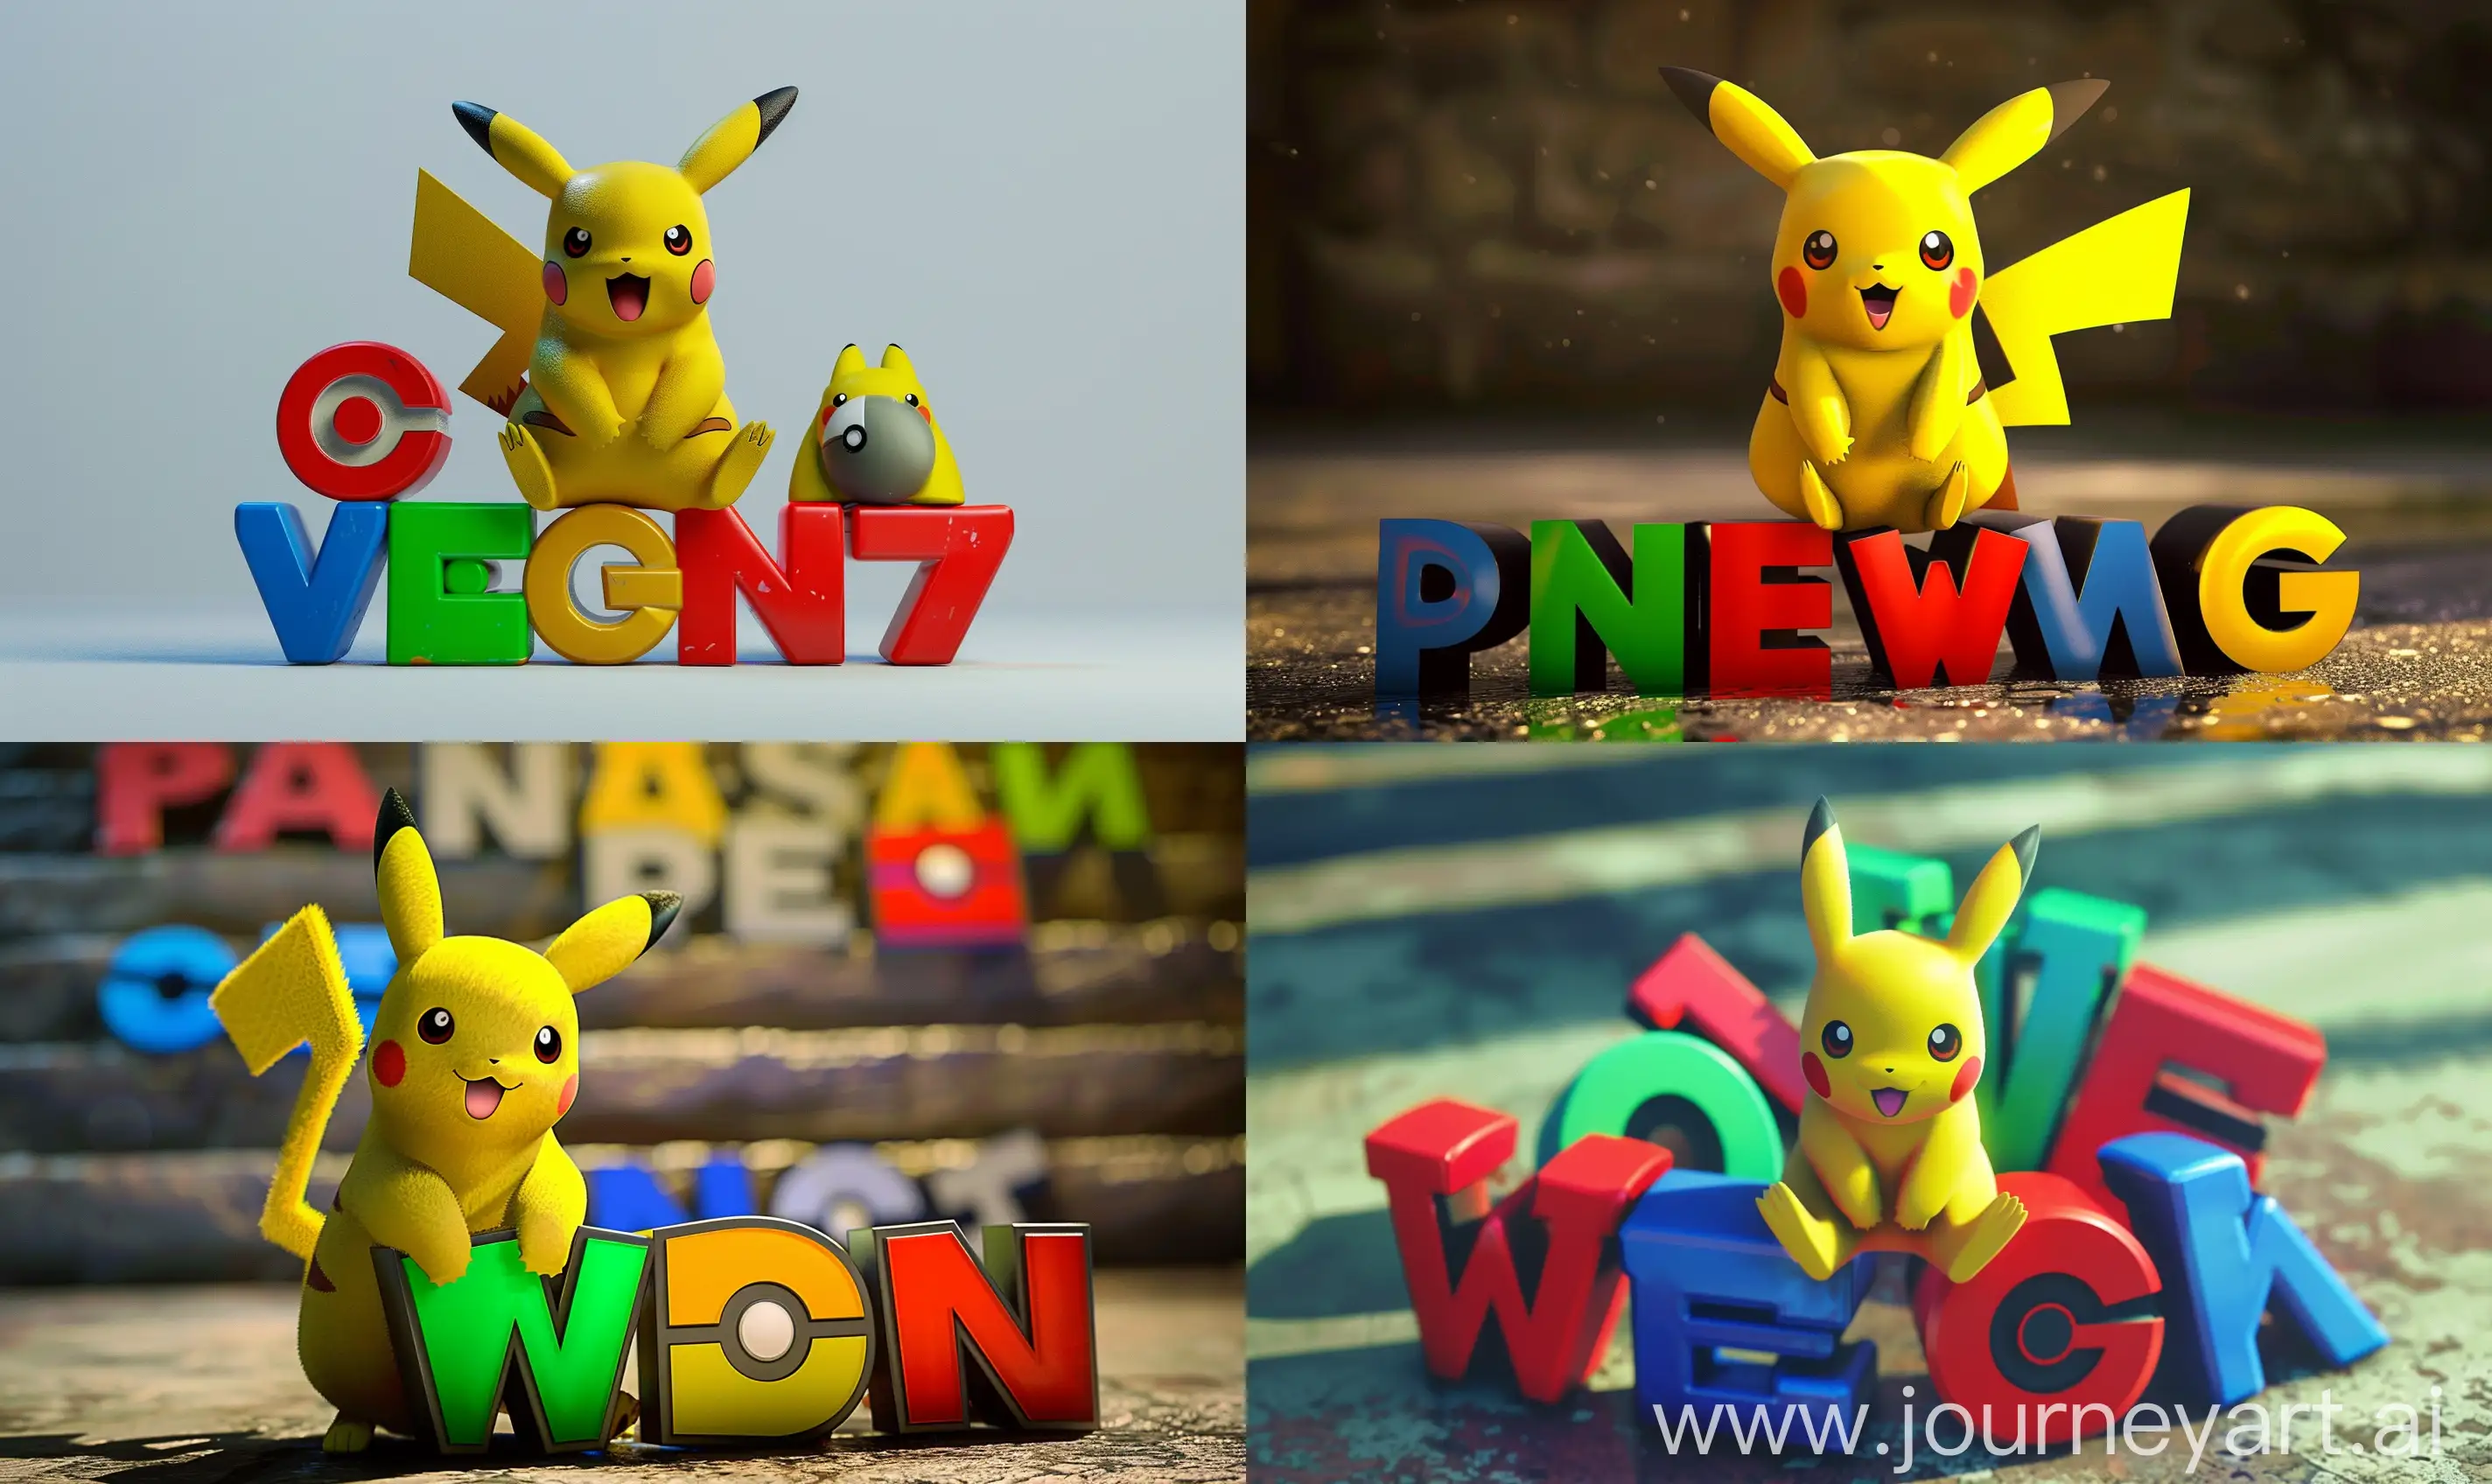 PokemonStyle-Weazel-News-Logo-with-Pikachu